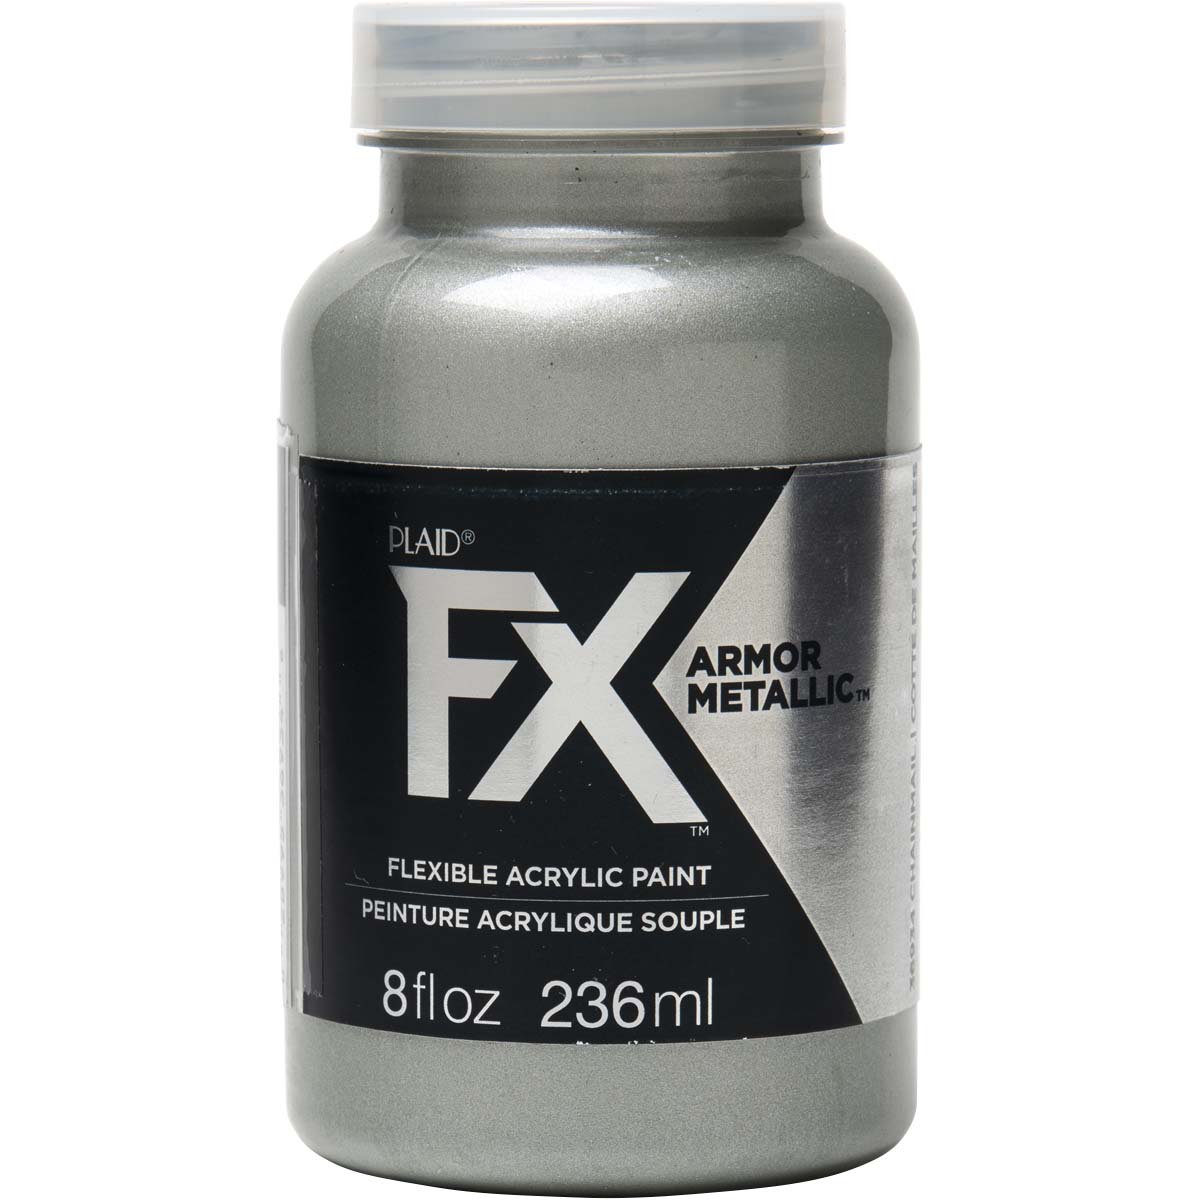 PlaidFX Armour Metal Flexible Acrylic Paint - Chainmail, 8 oz. - 36934